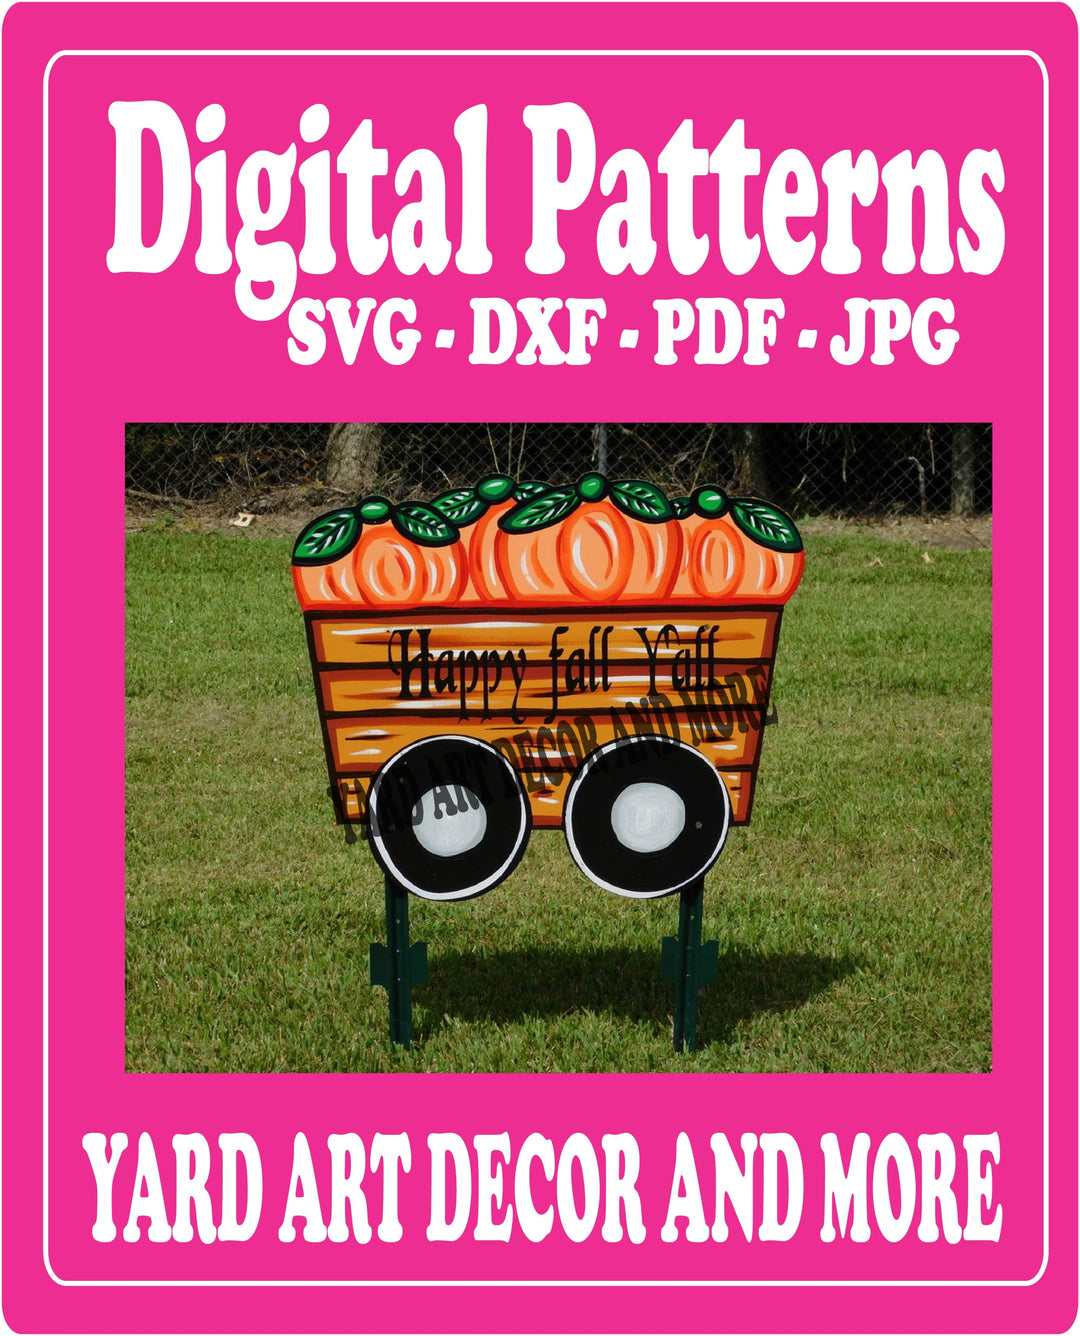 Happy Fall Y'all Card of Pumpkin yard art decor digital template